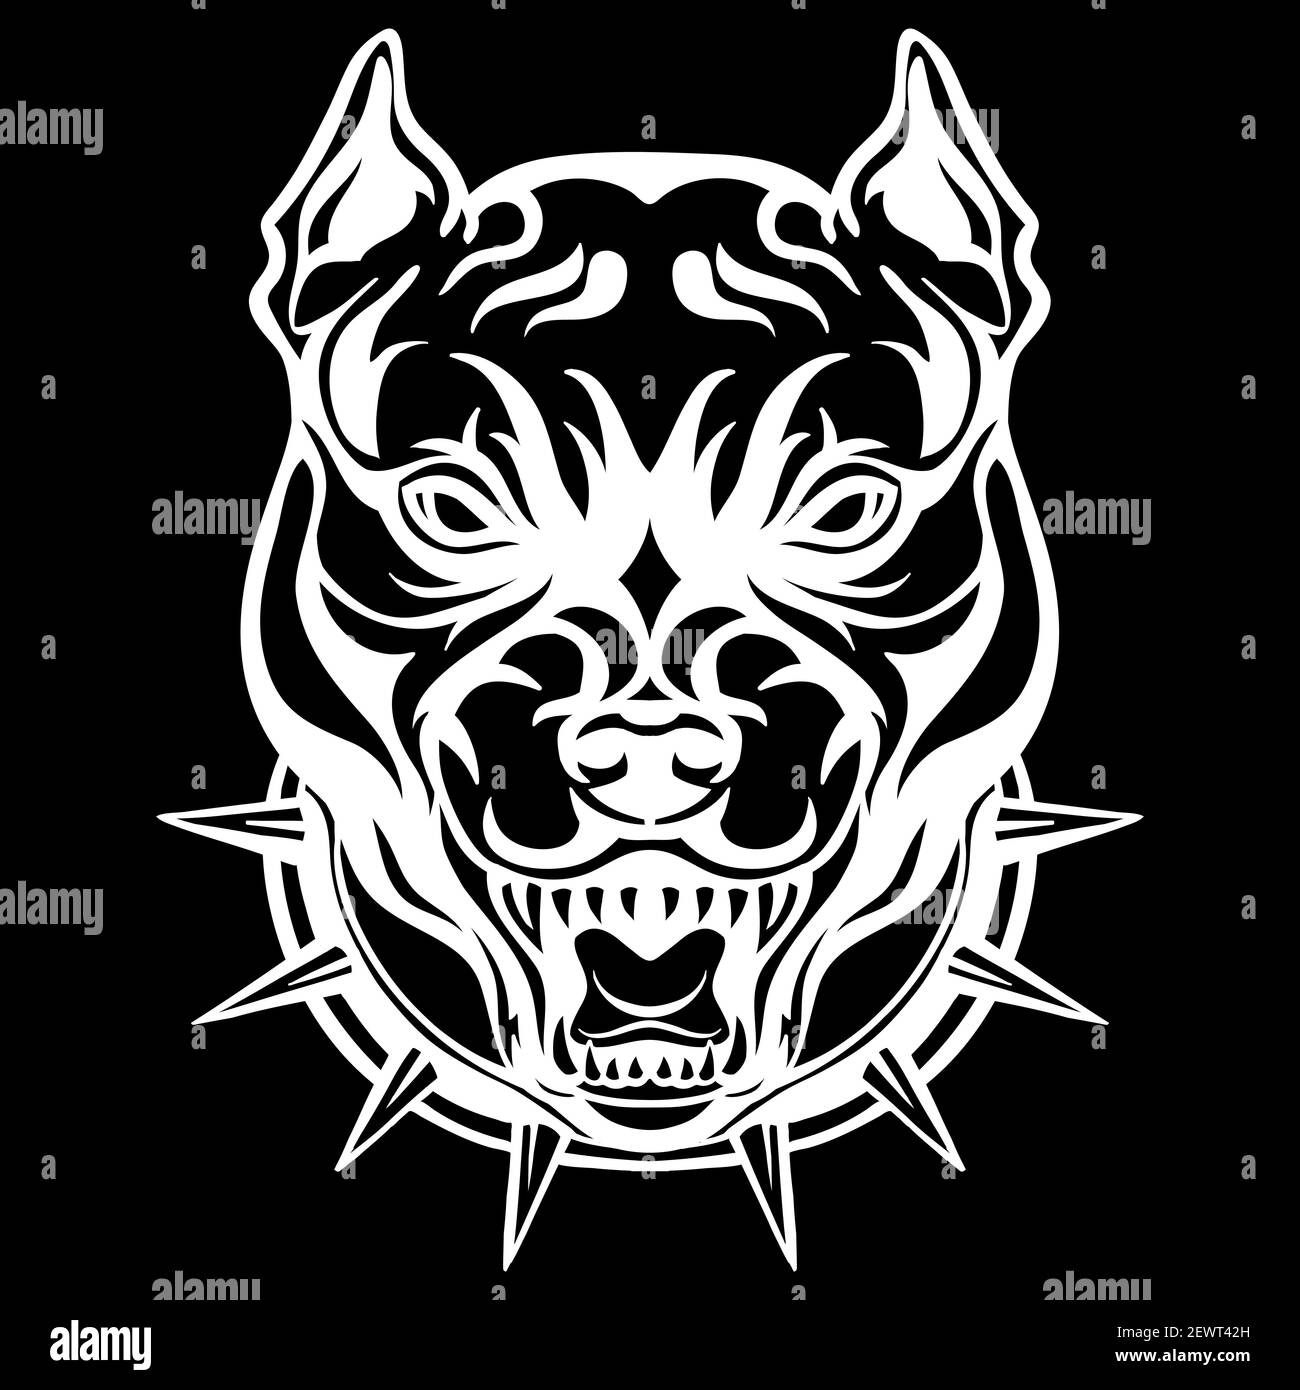 Mascot. Vektorkopf von Cougar. Weiße Abbildung von Gefahr Hund isoliert auf schwarzem Hintergrund. Für Dekoration, Druck, Design, Logo, Sportvereine, tätowierung Stock Vektor